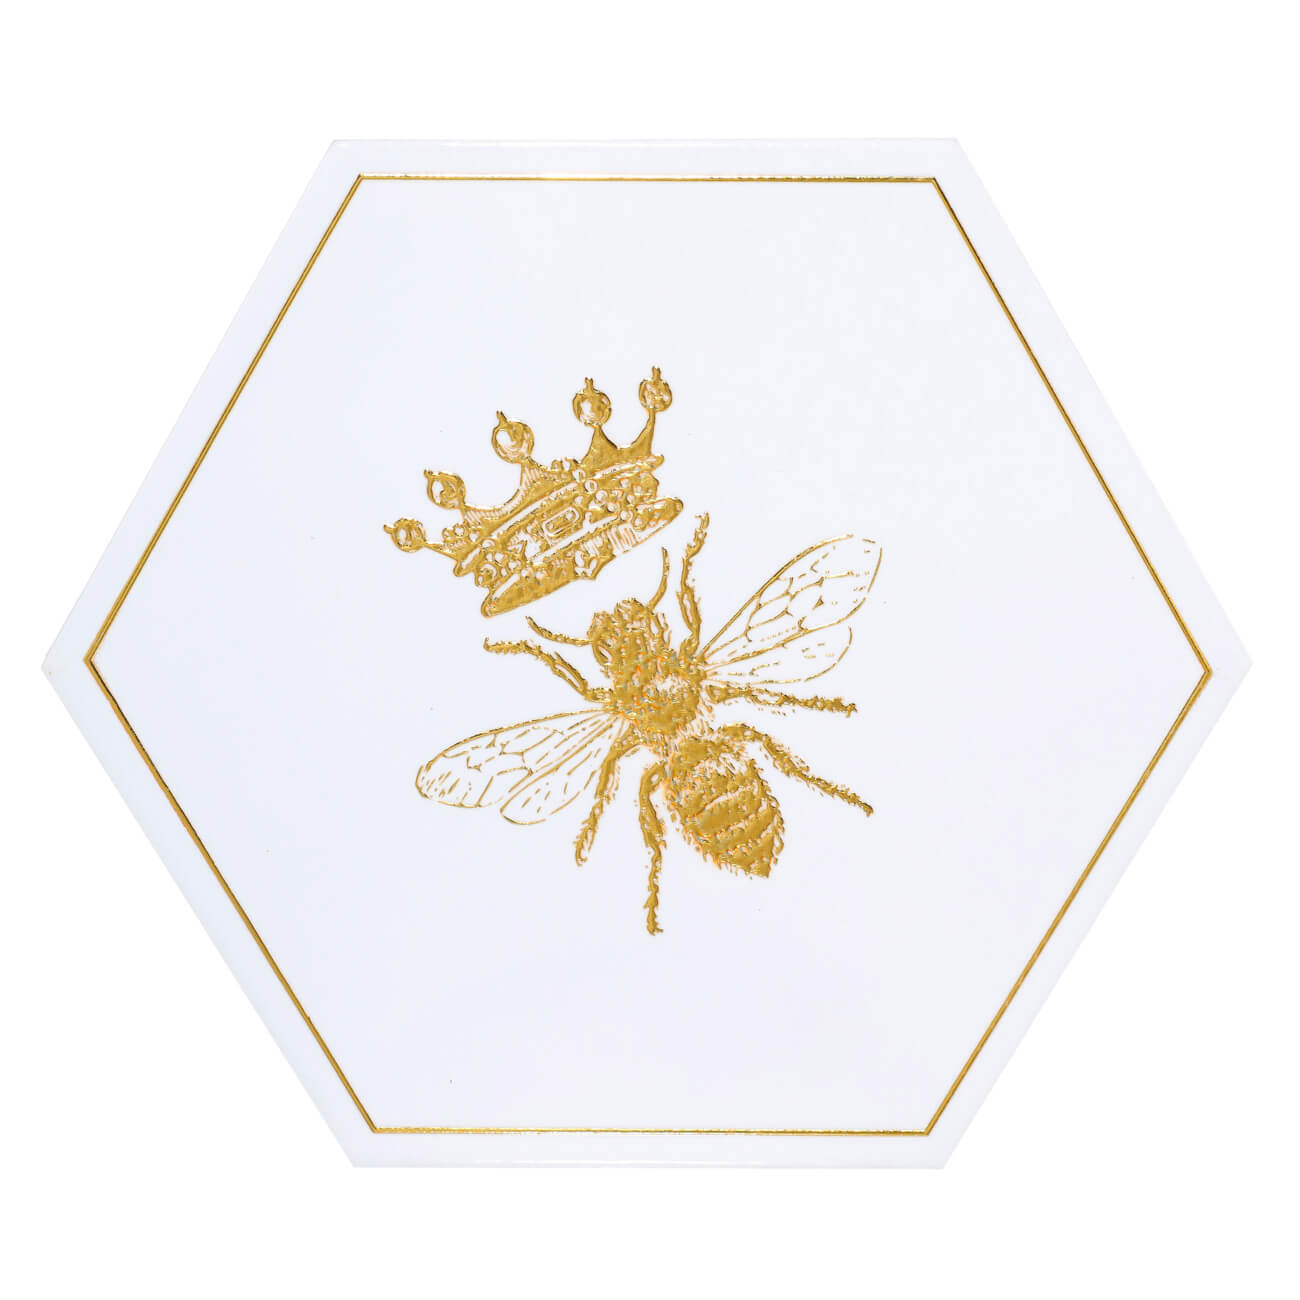 Подставка под горячее, 20 см, керамика/пробка, шестиугольная, белая, Королевская пчела, Honey подставка под горячее кекс 20 см можжевельник